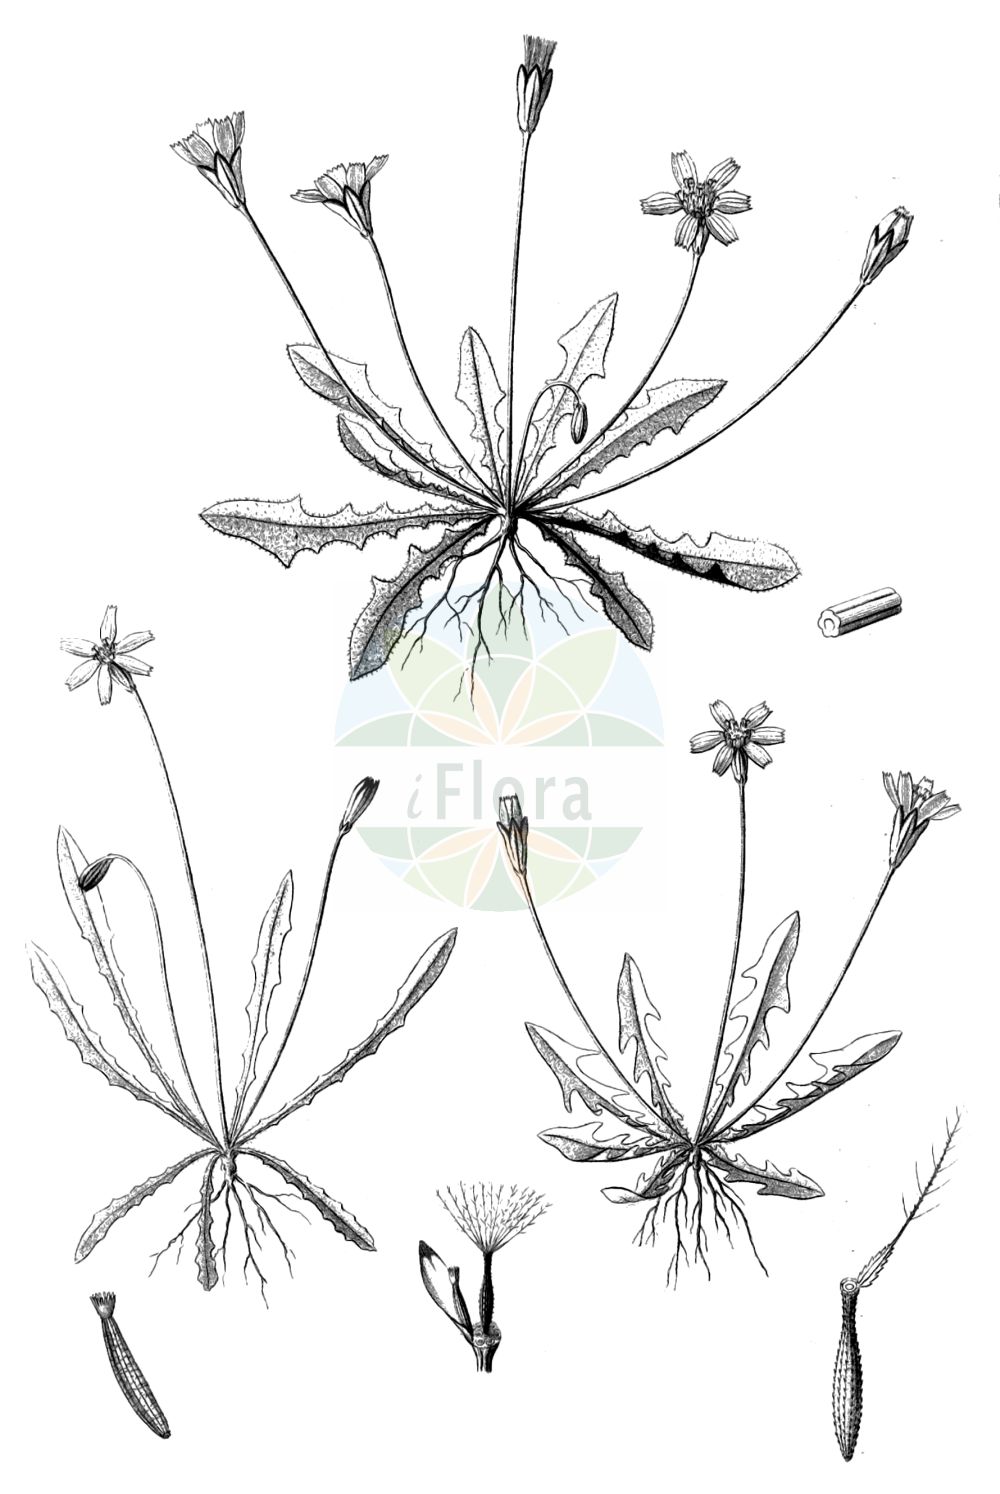 Historische Abbildung von Leontodon saxatilis (Nickender Löwenzahn - Lesser Hawkbit). Das Bild zeigt Blatt, Bluete, Frucht und Same. ---- Historical Drawing of Leontodon saxatilis (Nickender Löwenzahn - Lesser Hawkbit). The image is showing leaf, flower, fruit and seed.(Leontodon saxatilis,Nickender Löwenzahn,Lesser Hawkbit,Colobium taraxacoides,Hyoseris taraxacoides,Leontodon leysseri,Leontodon saxatilis,Leontodon taraxacoides,Thrincia leysseri,Thrincia saxatilis,Thrincia saxatilis subsp. taraxacoides,Nickender Loewenzahn,Fels-Milchkraut,Zinnensalat,Lesser Hawkbit,Hairy Hawkbit,Rough Hawkbit,Leontodon,Löwenzahn,Hawkbit,Asteraceae,Korbblütengewächse,Daisy family,Blatt,Bluete,Frucht,Same,leaf,flower,fruit,seed,Reichenbach (1823-1832))